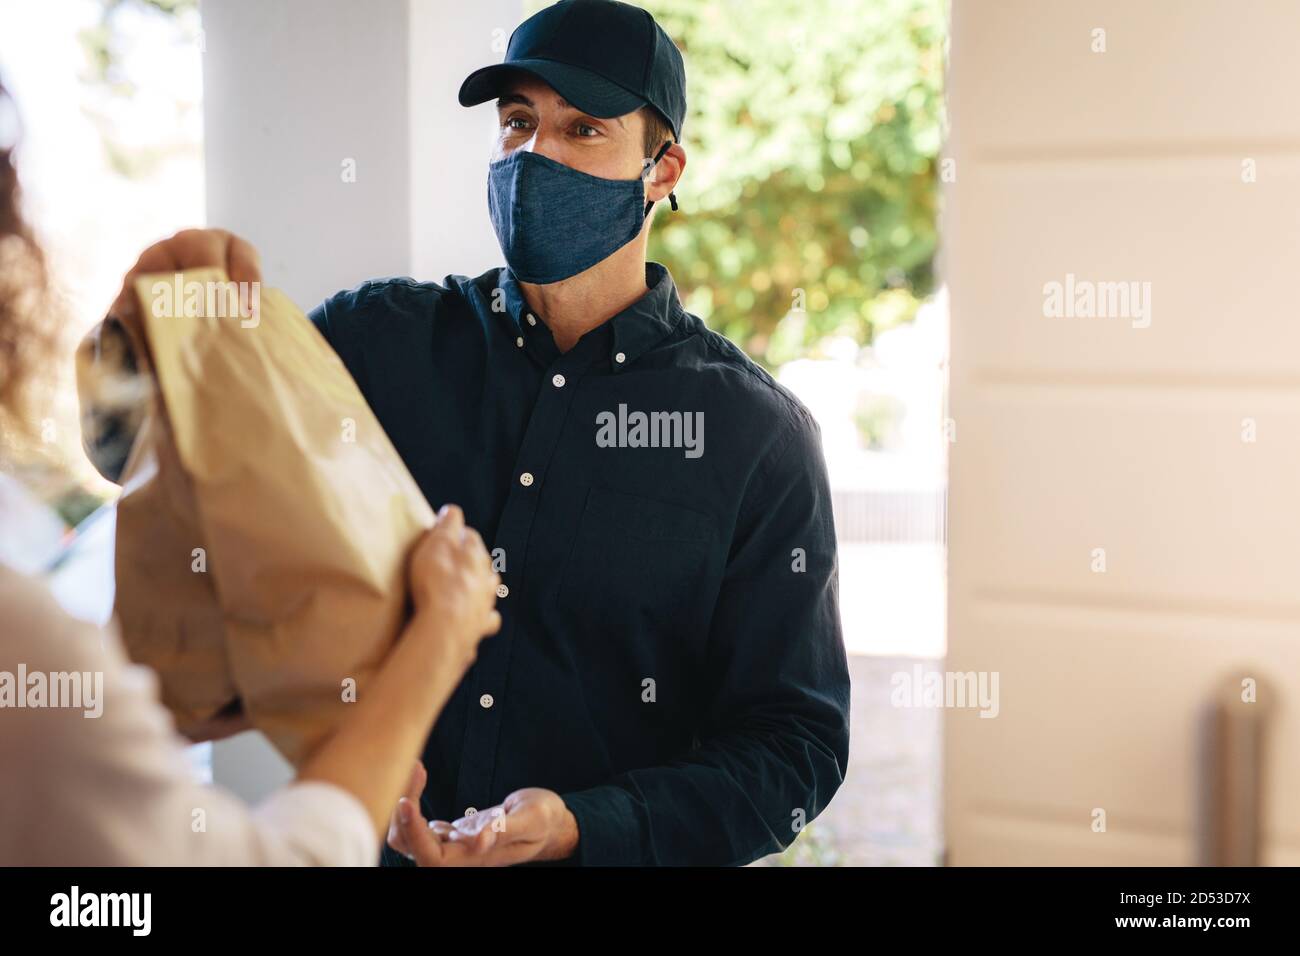 Delivery Mann mit Gesichtsmaske Lieferung Pakete an eine Frau zu Hause. Lieferservice während einer Corona-Virus-Pandemie. Stockfoto